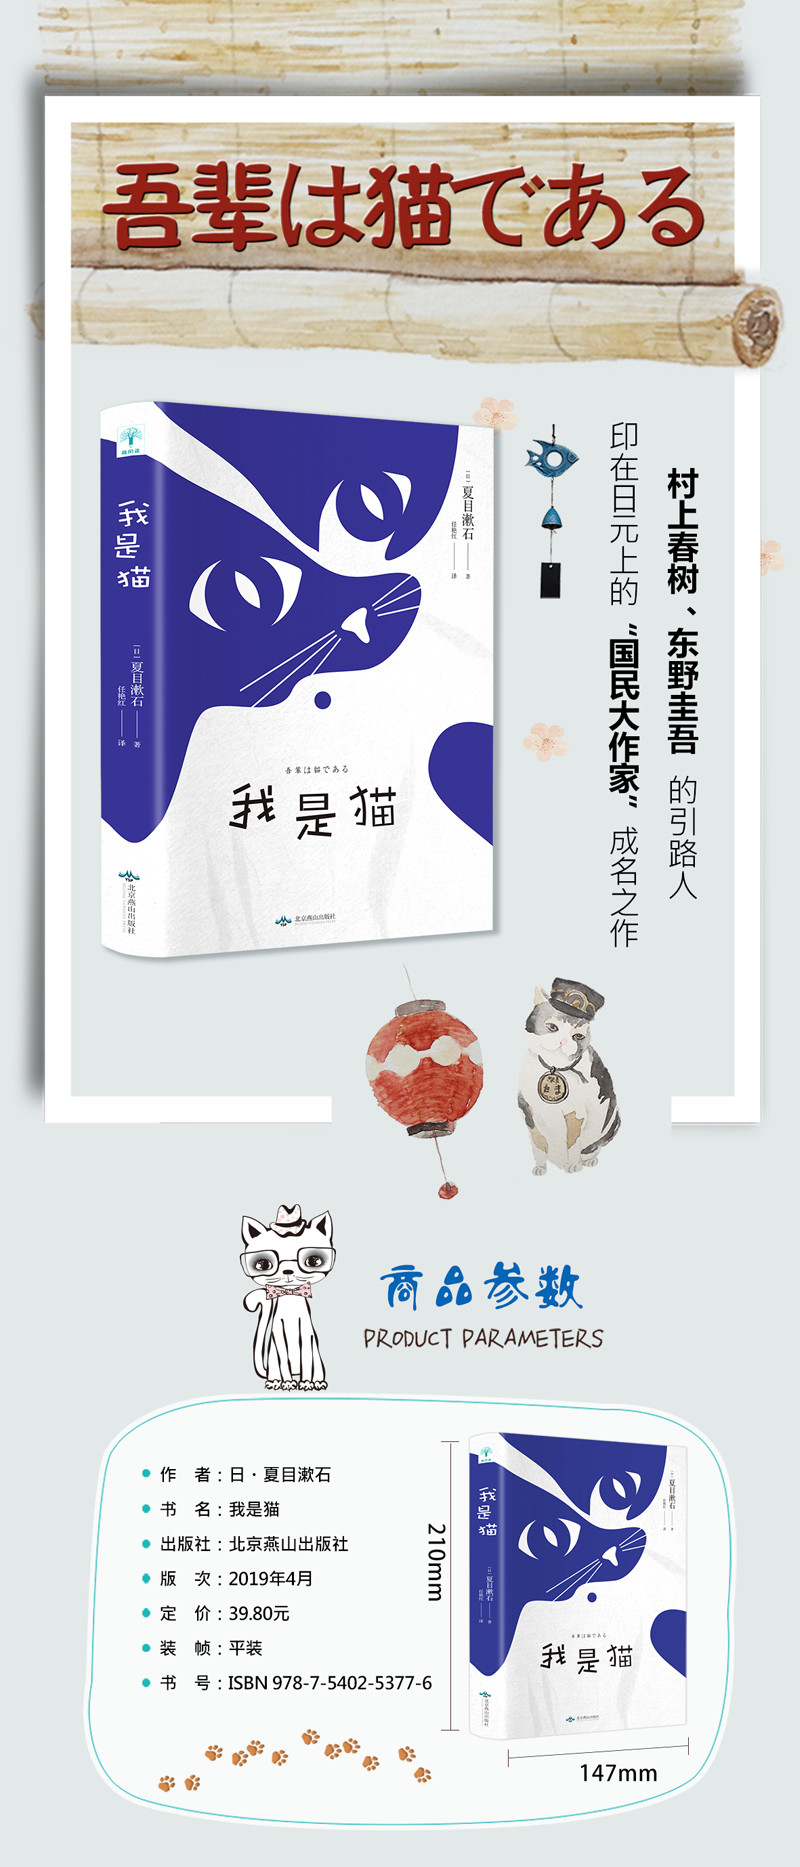 《微阅读-我是猫》漱石著【摘要 书评 在线阅读】-苏宁易购图书